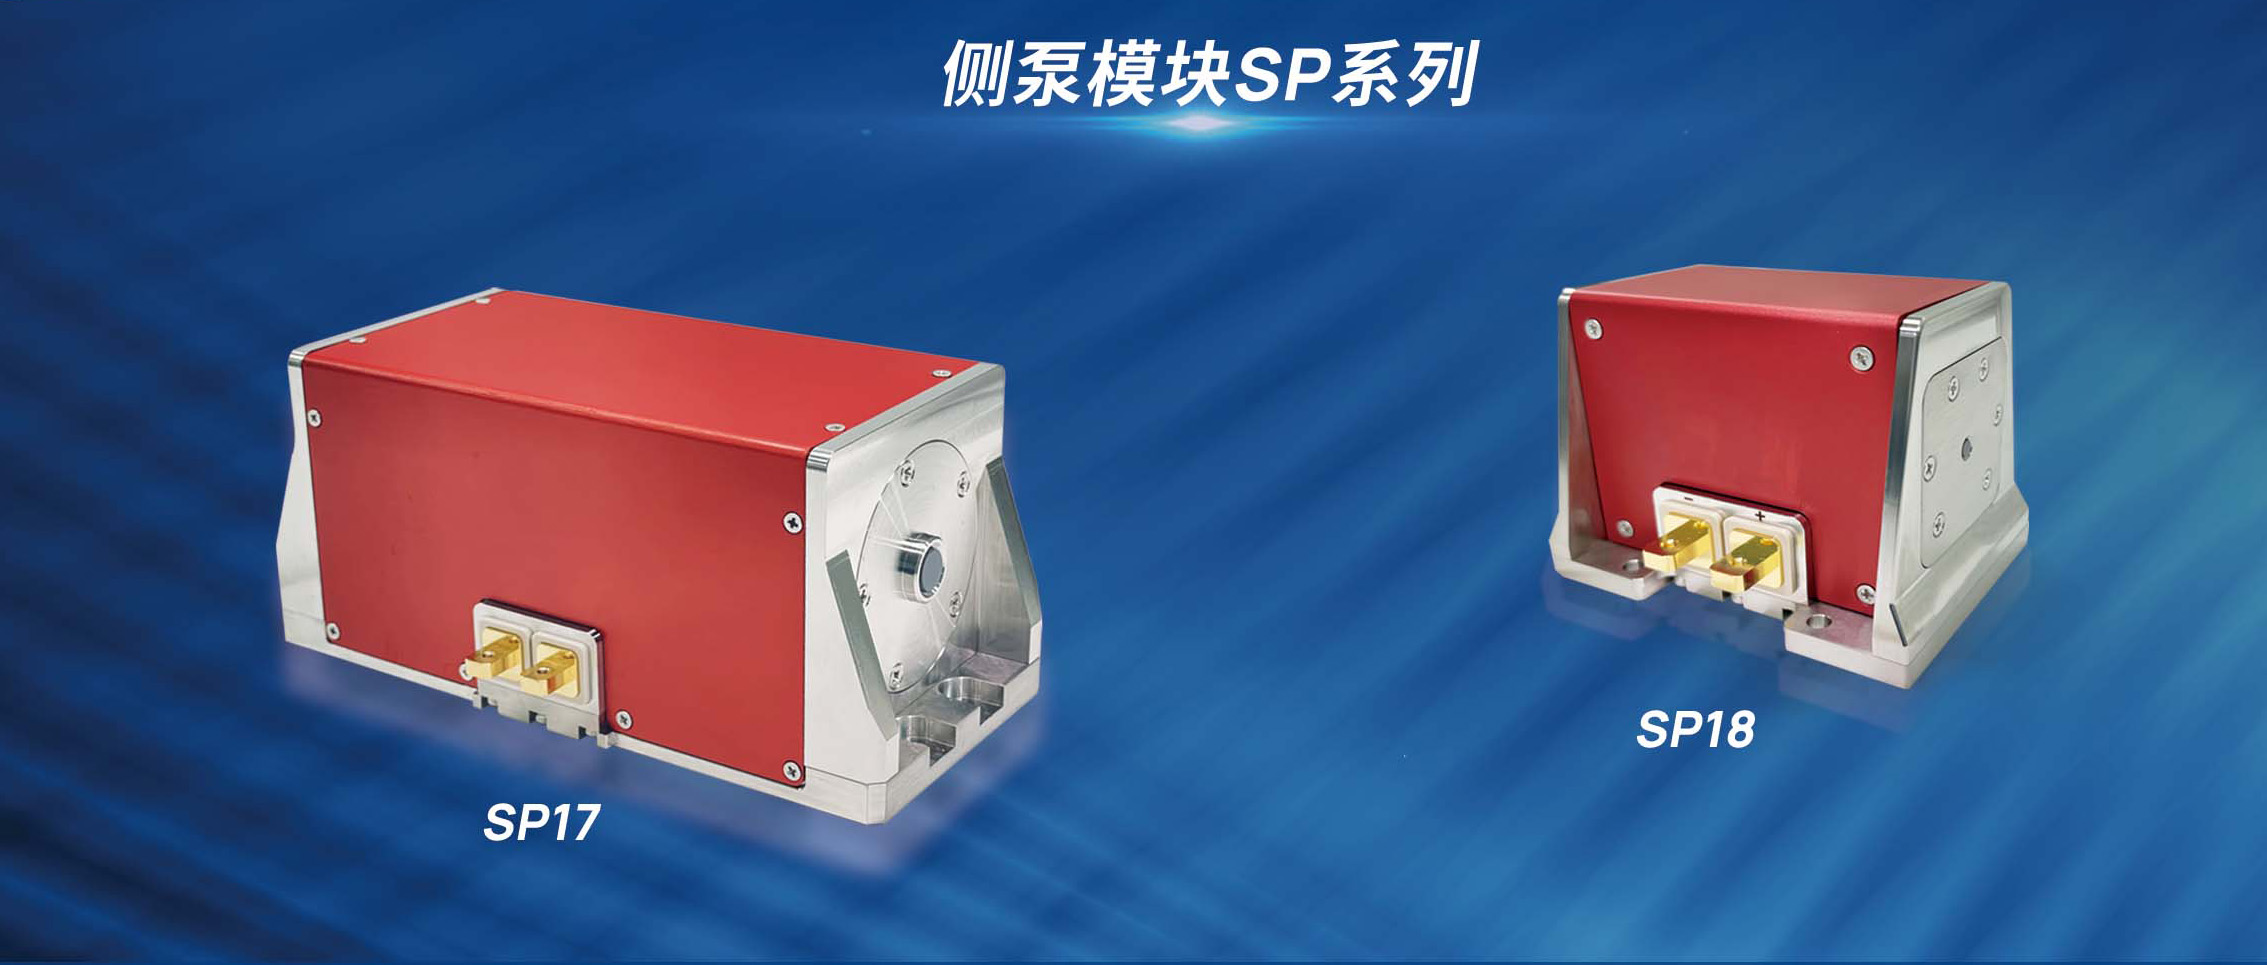 新品发布 | 炬光科技推出高功率半导体激光侧泵模块SP17和SP18